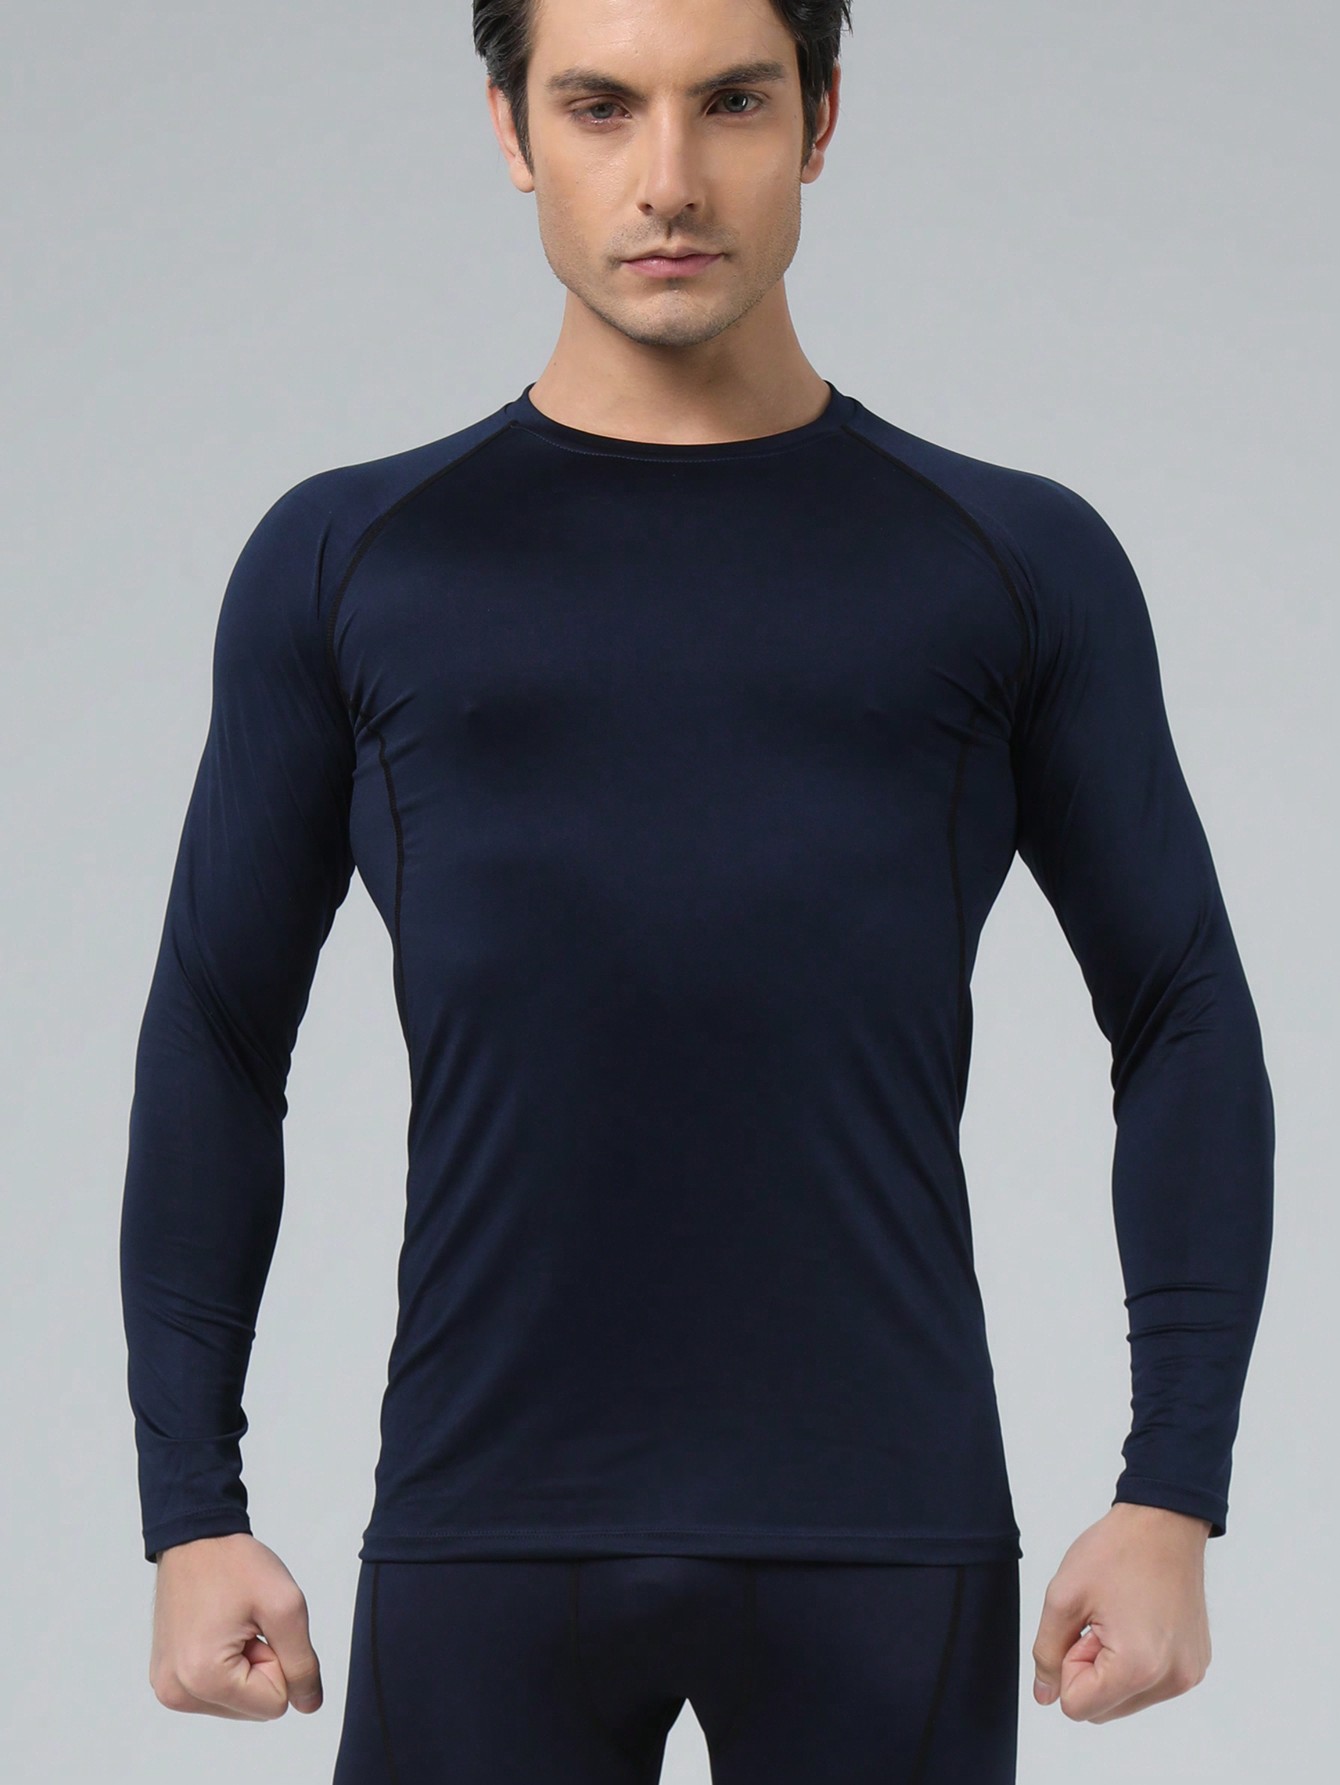 Мужская эластичная компрессионная рубашка для фитнеса с длинными рукавами, темно-синий одежда daiwa футболка для рыбалки мужская дышащая быстросохнущая одежда для рыбалки daiwa летняя спортивная рубашка с коротким рукавом футбо